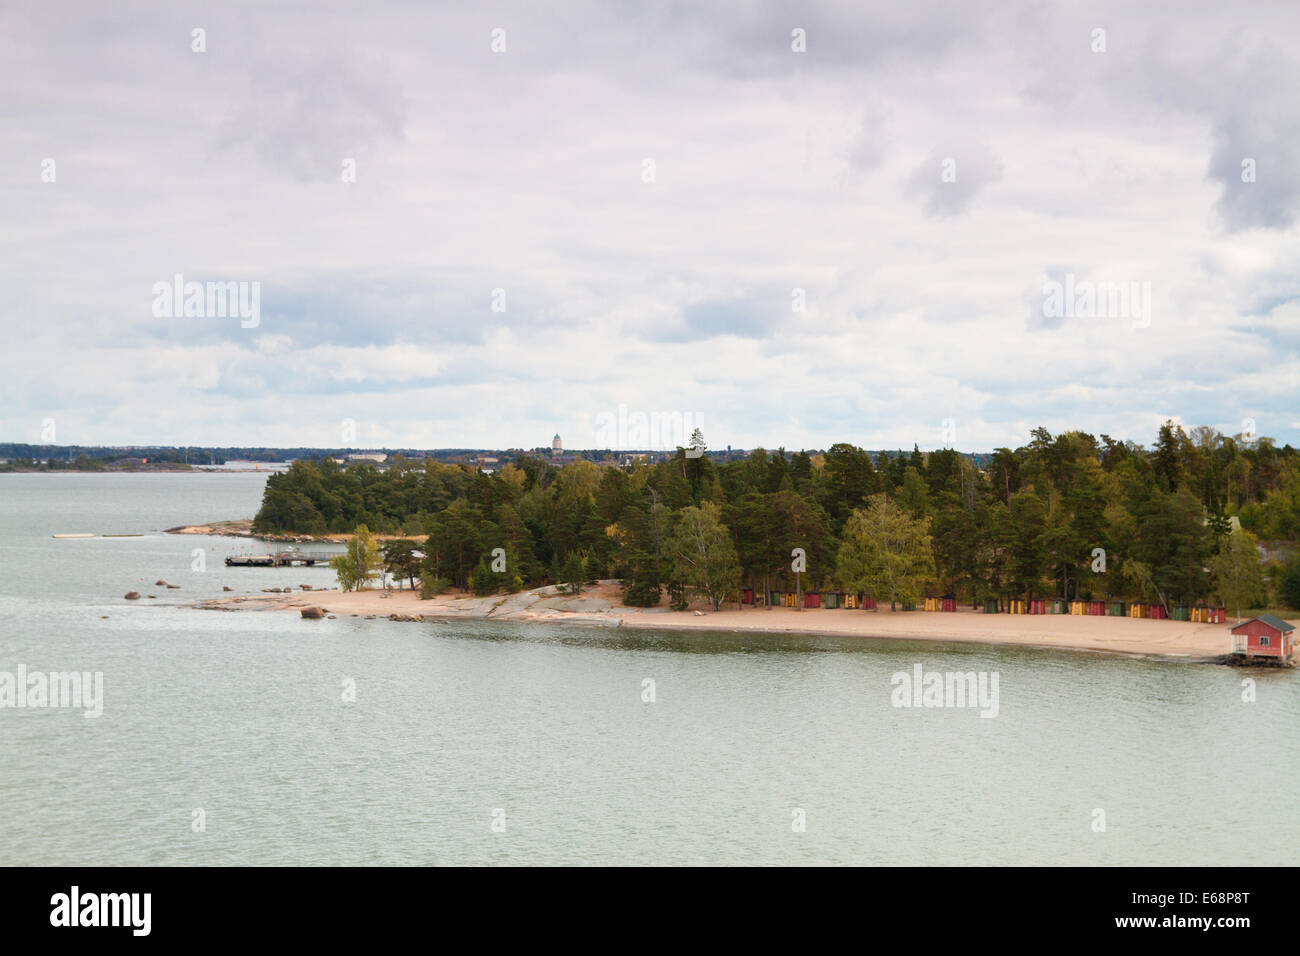 Island Helsinki in autumn Stock Photo